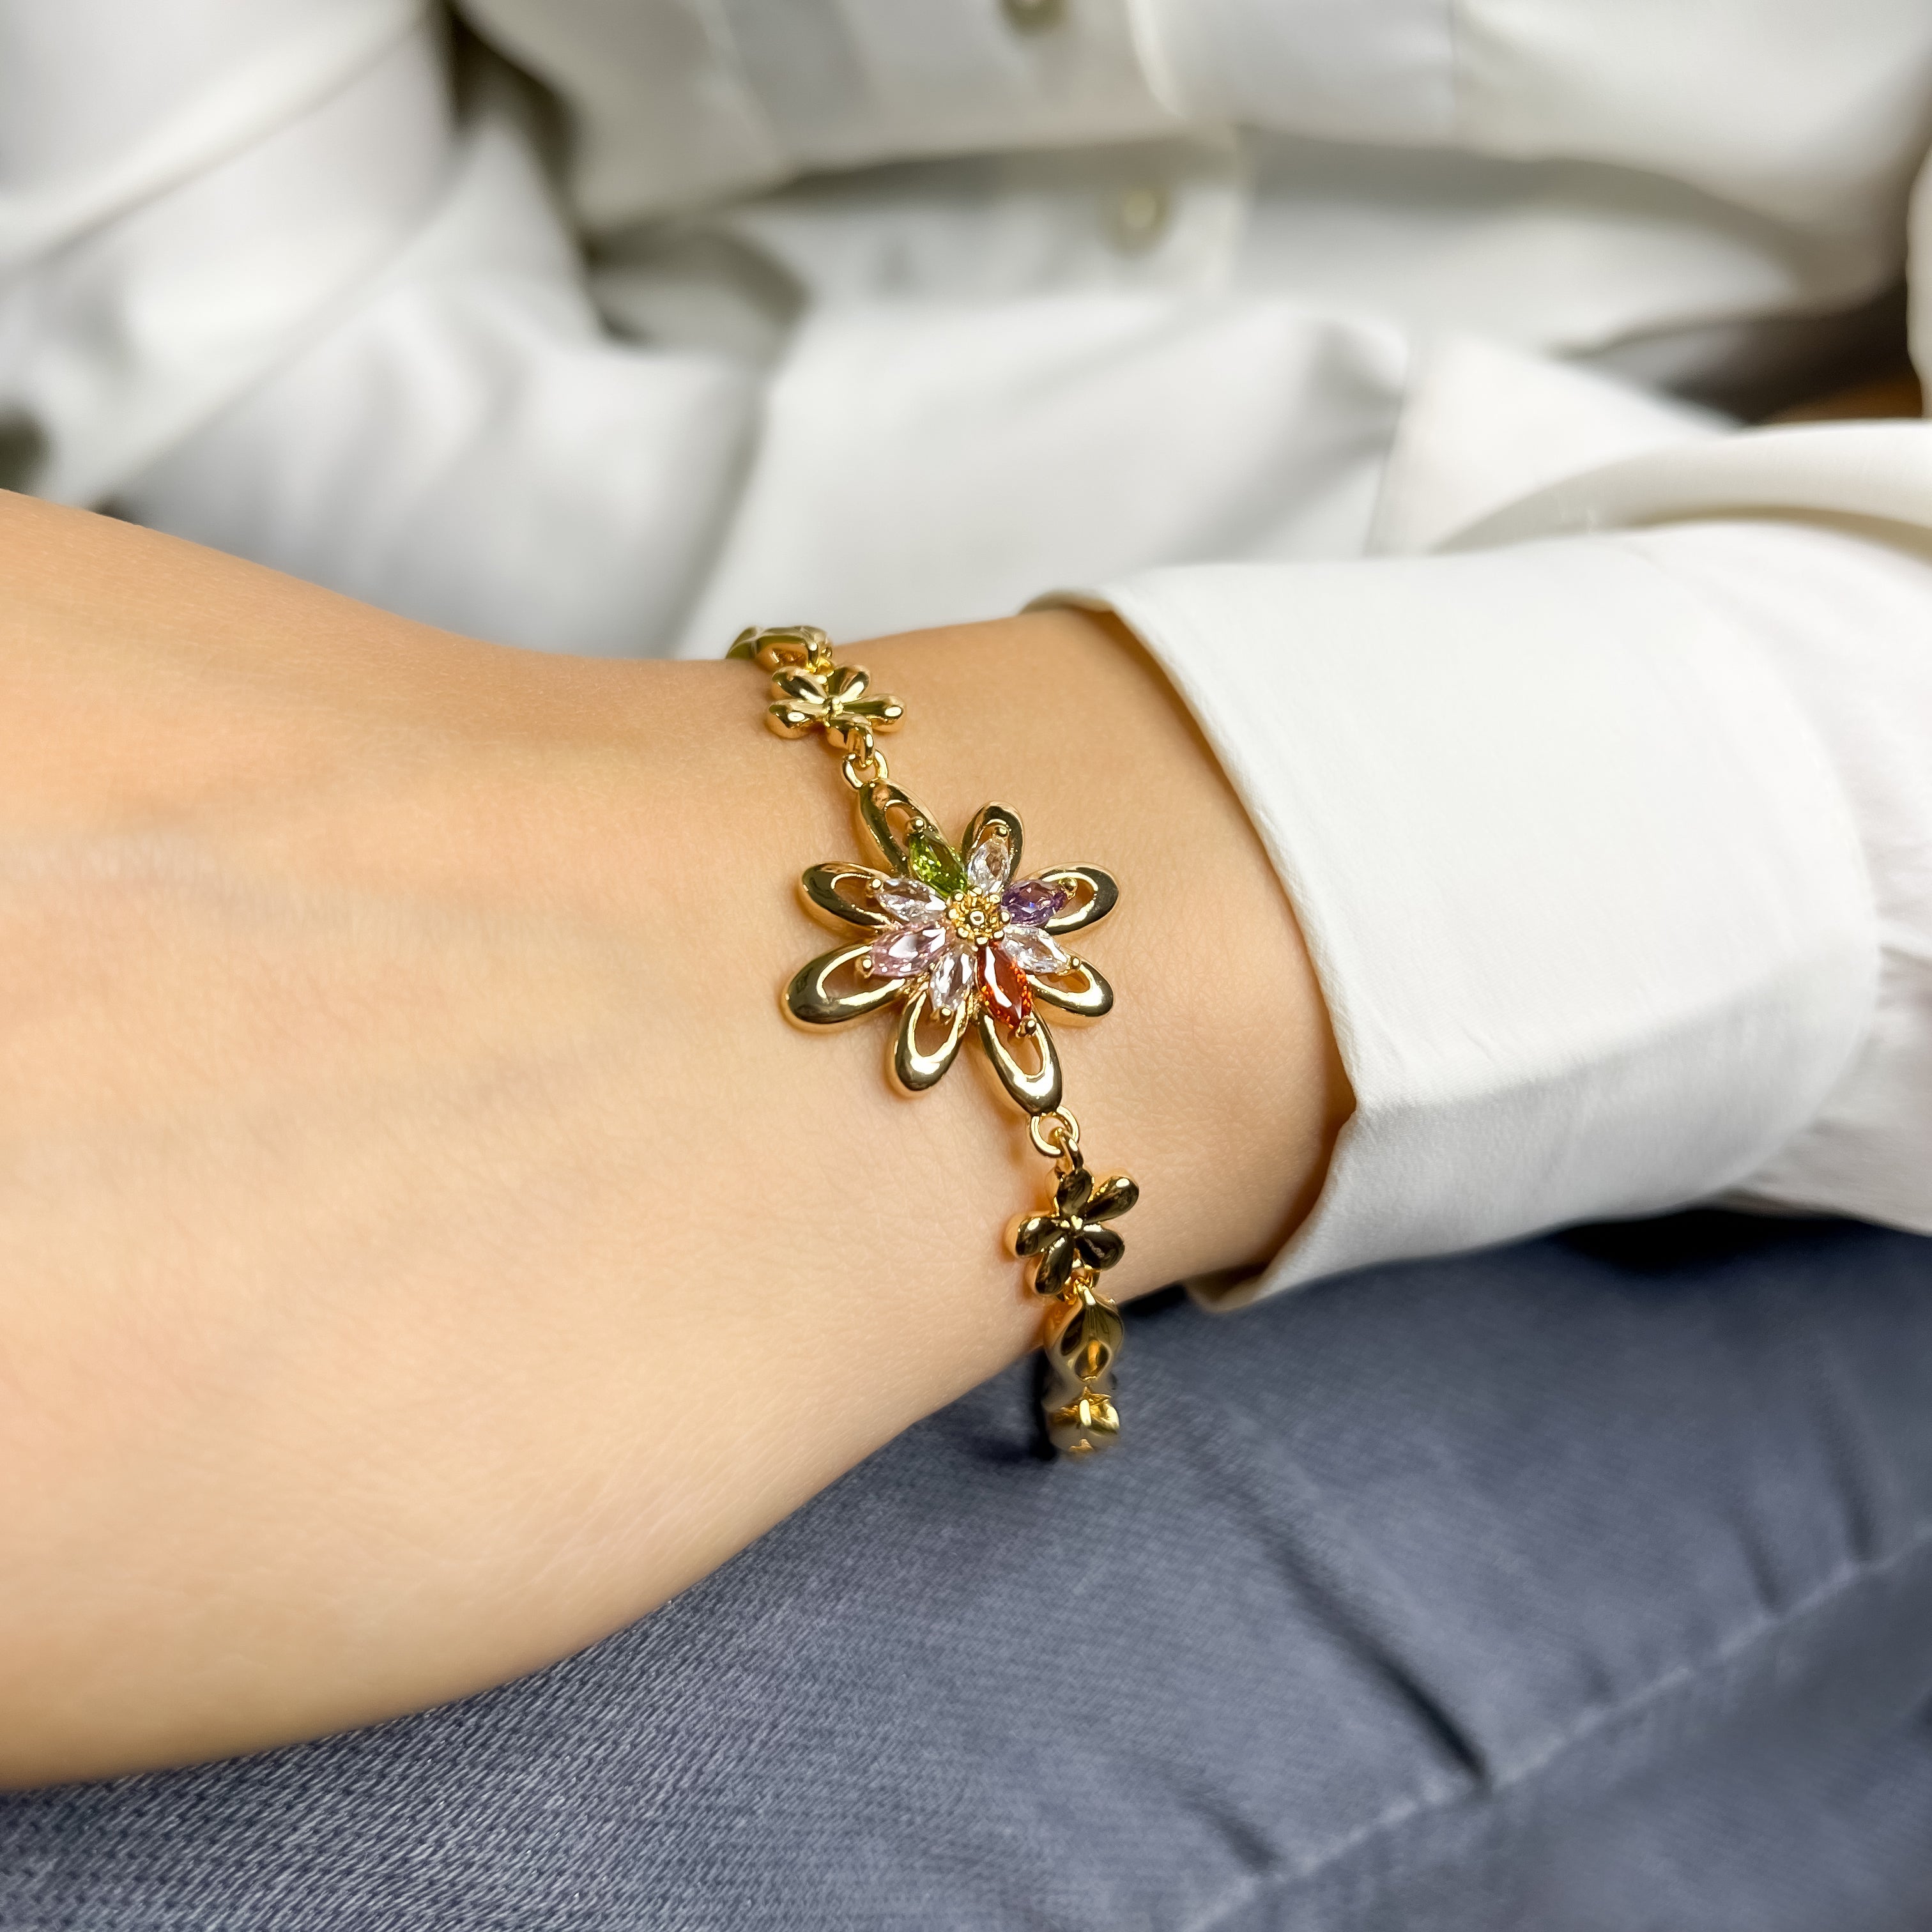 Stainless Steel Rose Gold Flower Link Chain Bracelet For Women – ZIVOM